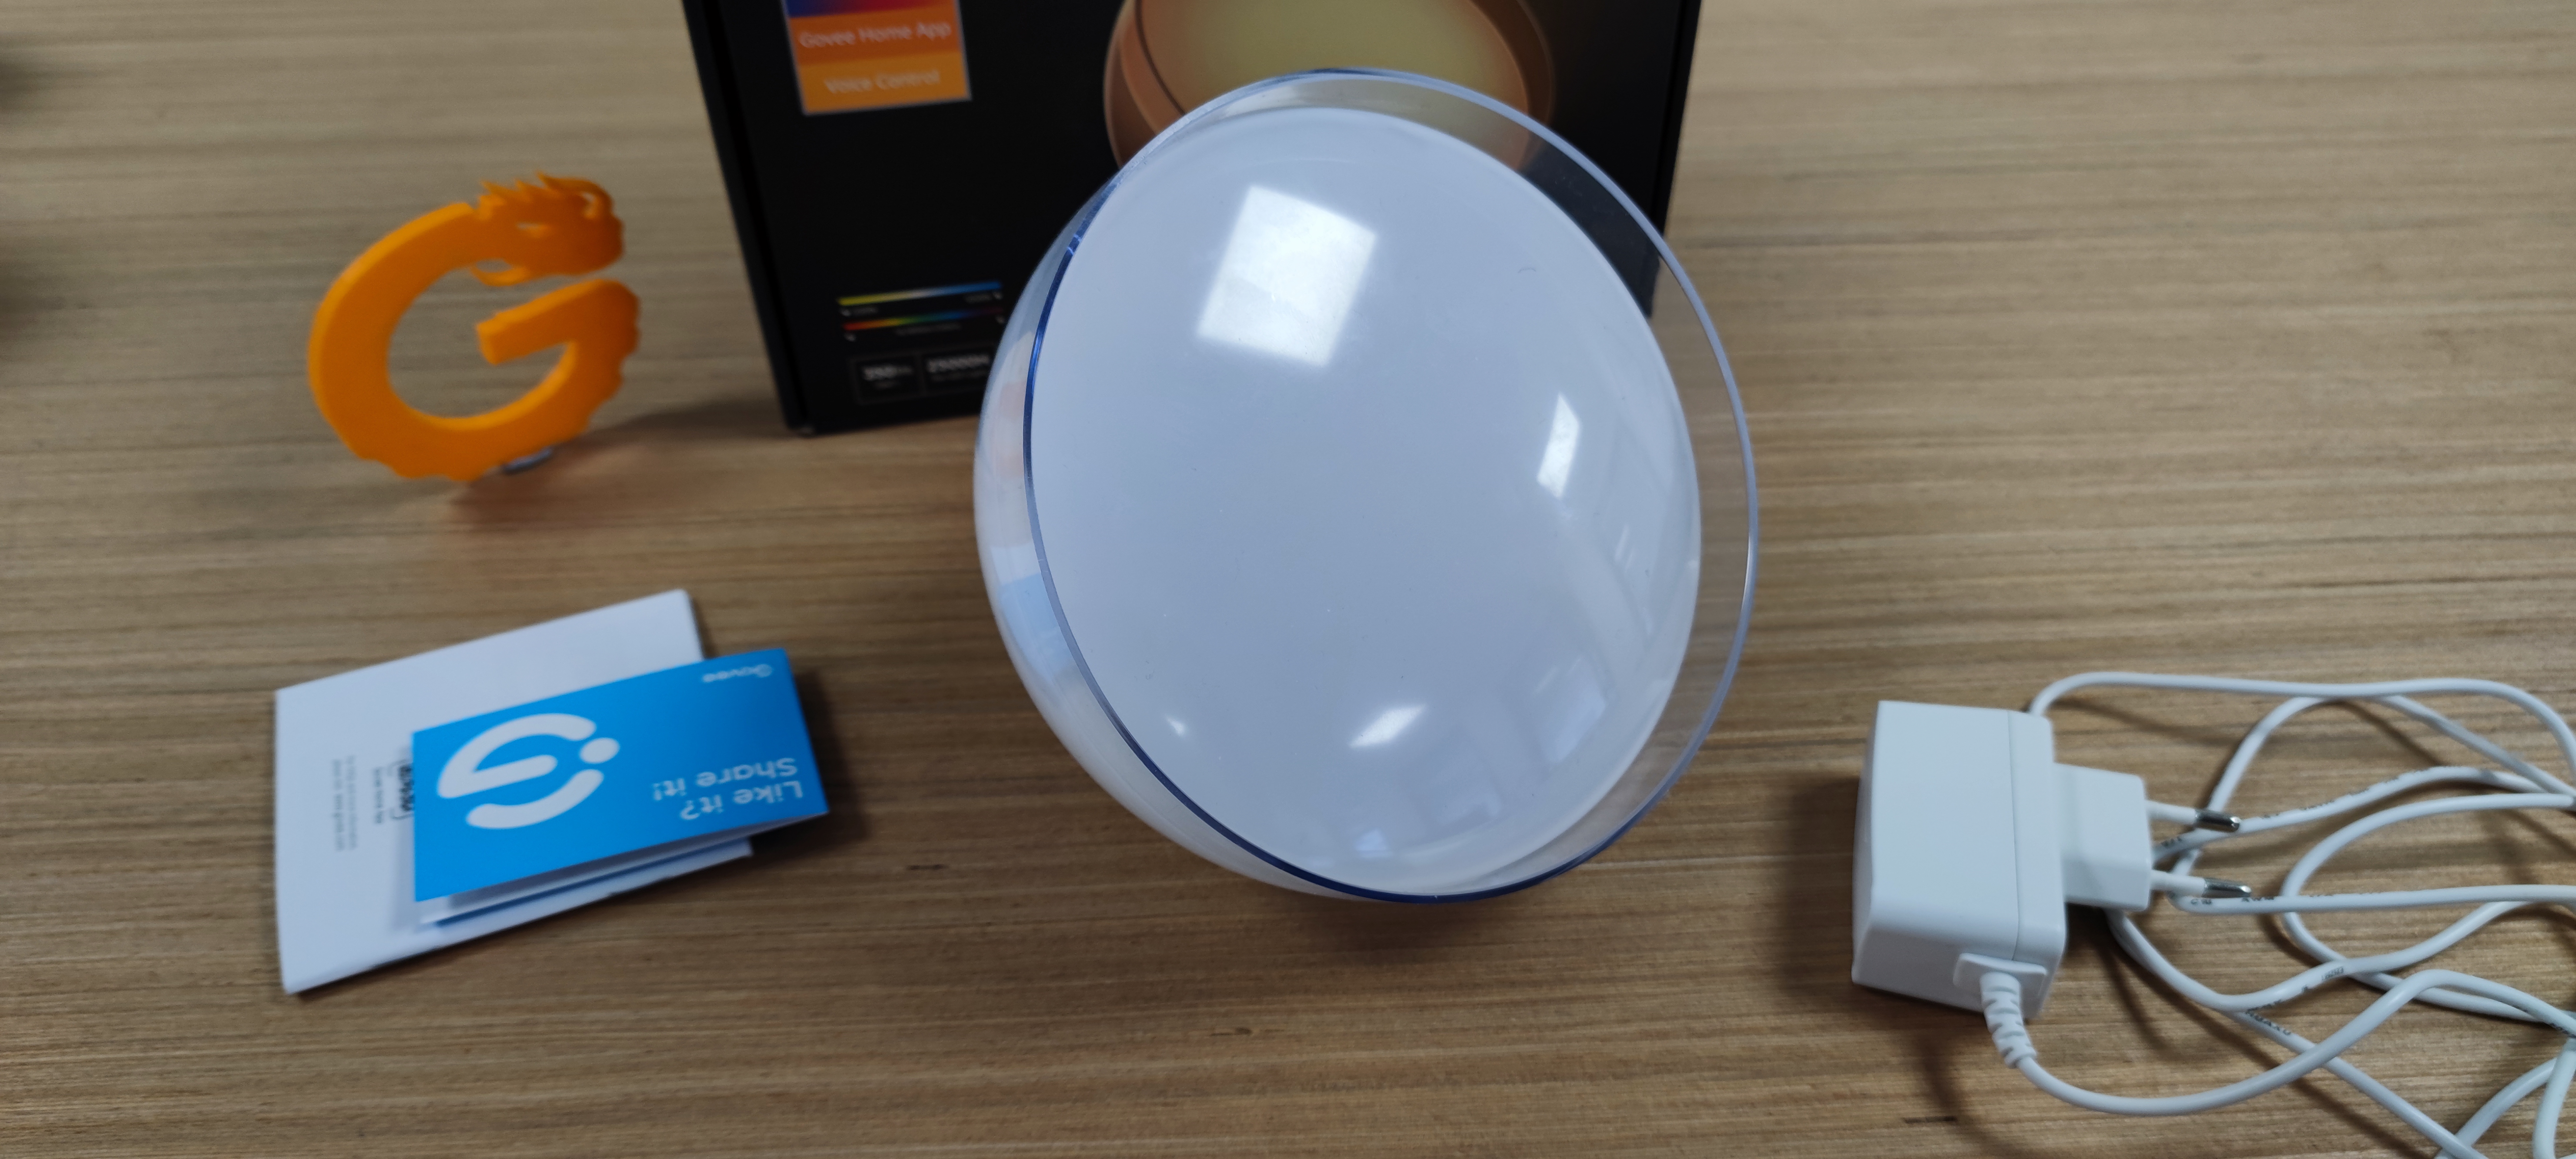 Dealabs.com on X: 💡 🌈 Un pack de 2 ampoules connectées Govee pour 17€ 👇  ➡️  ⬅️ Wi-Fi, Bluetoth, Compatibles Google /  Alexa  / X